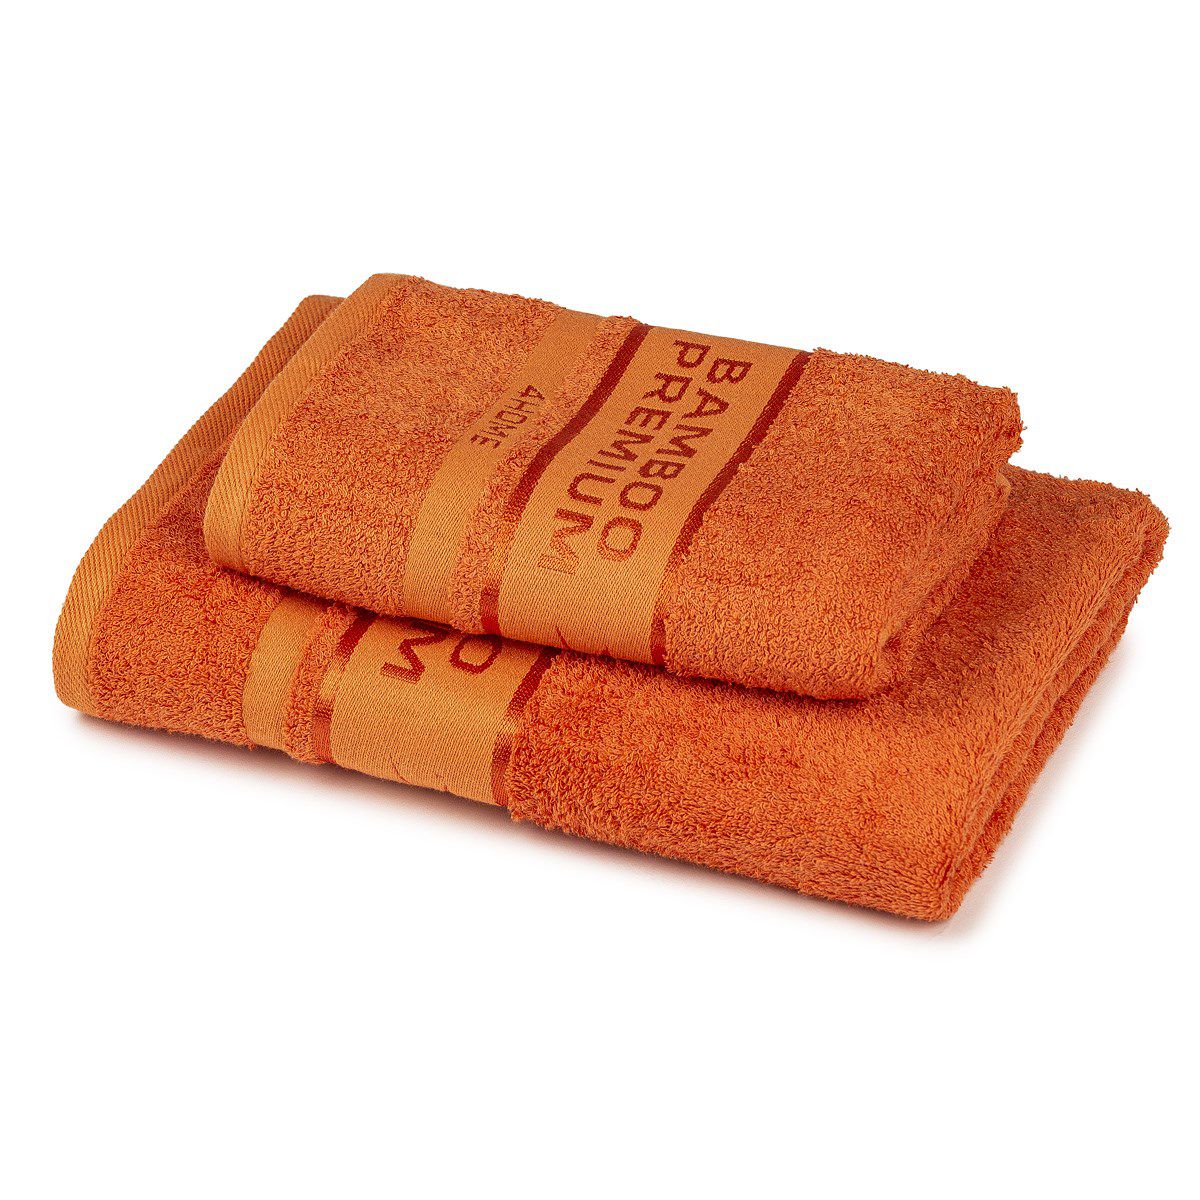 4Home Sada Bamboo Premium osuška a ručník oranžová, 70 x 140 cm, 50 x 100 cm - 4home.cz